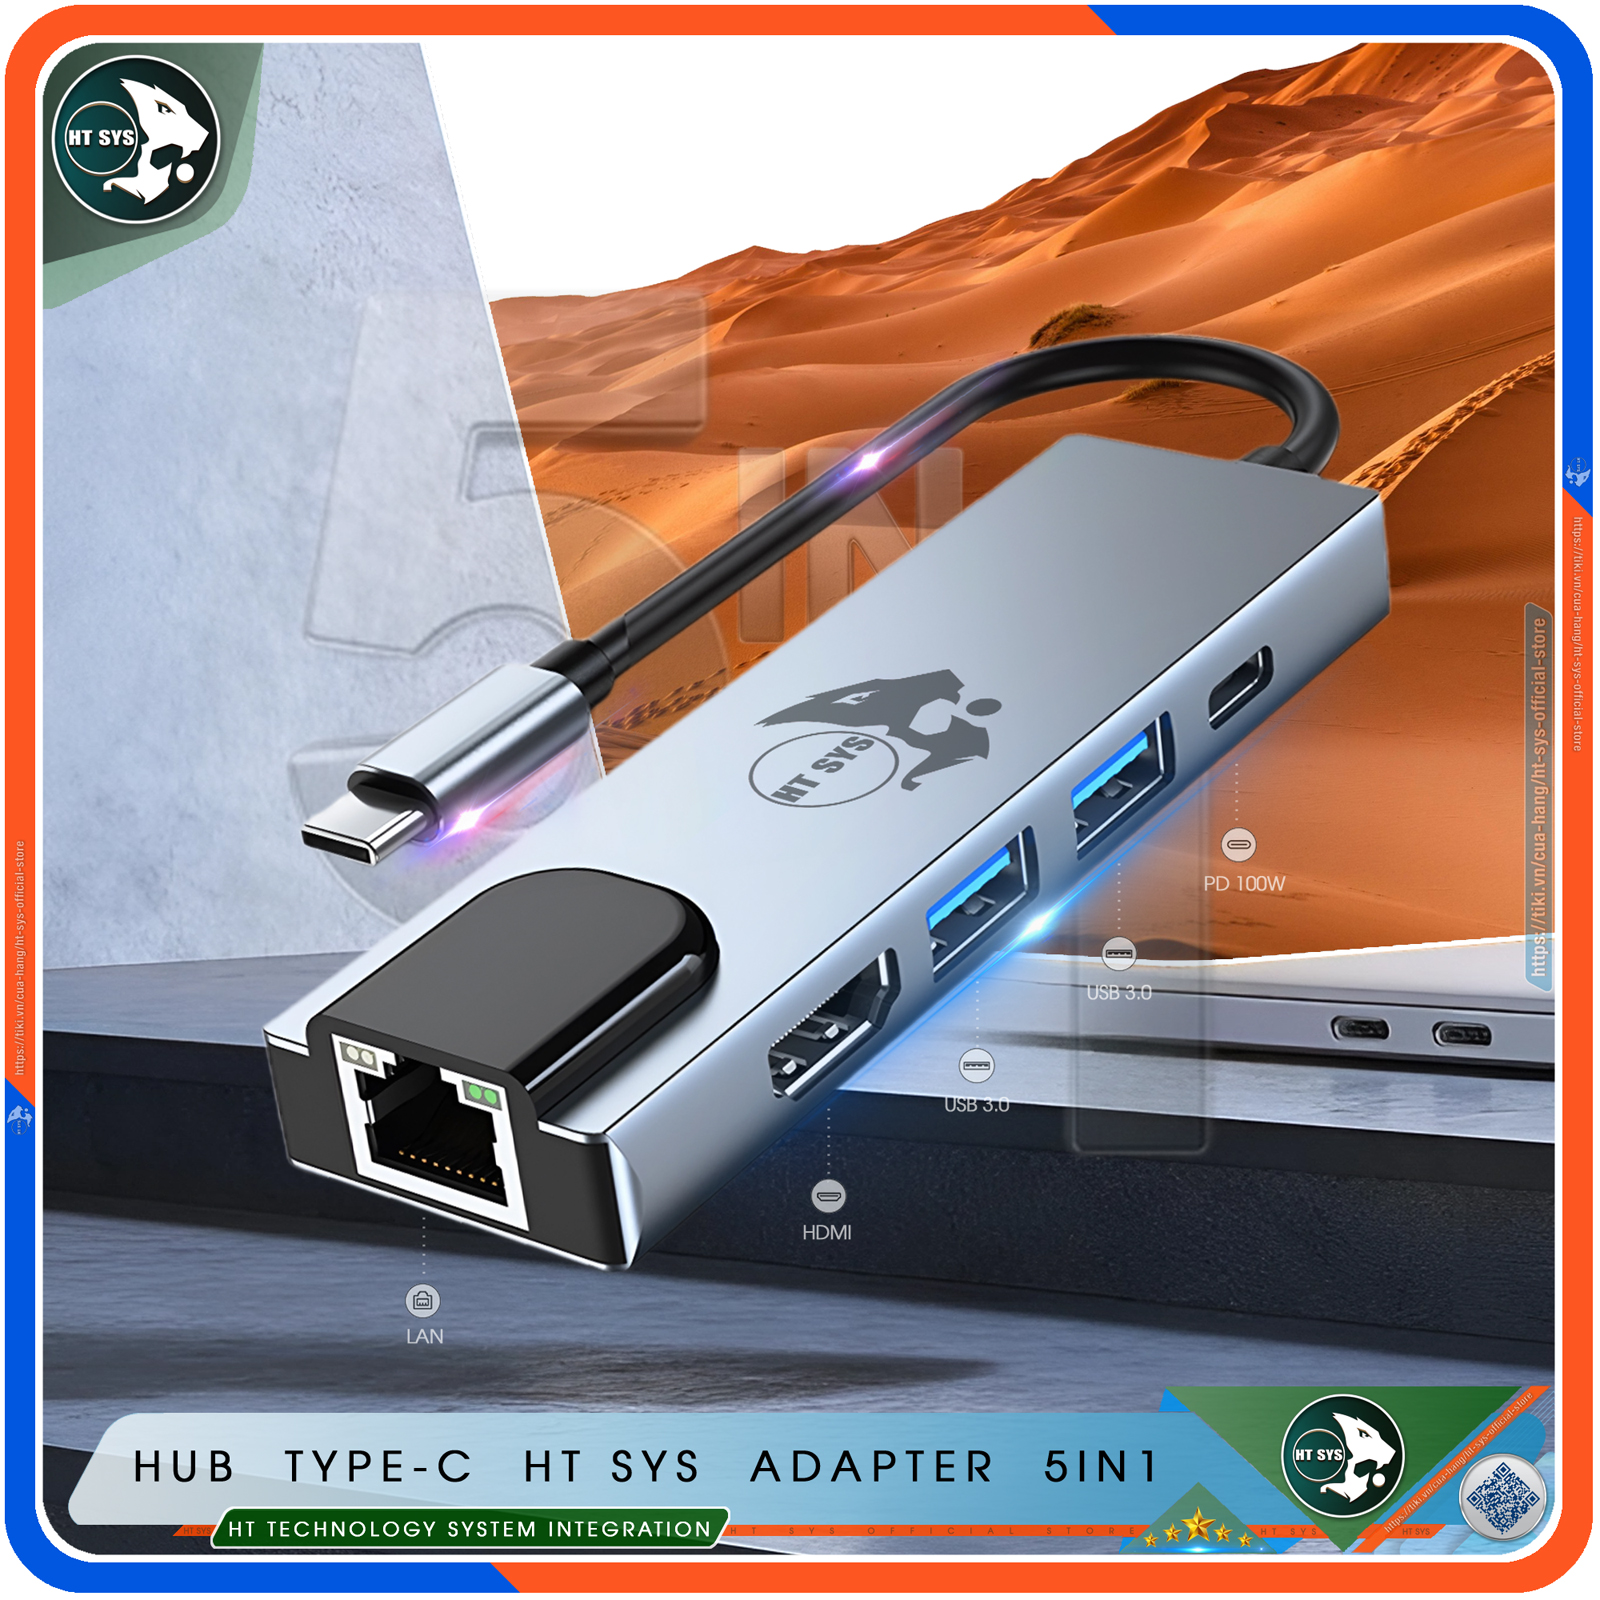 Hub Type C HT SYS 5in1 - Hub Chuyển Đổi USB Type-C To HDMI Chuẩn HDTV - Cổng Mạng Lan / HDMI 4K / USB 3.0 / Sạc Nhanh Type C PD - Kết Nối Nhiều Thiết Bị Với Tốc Độ Cao - Dành Cho MacBook / Tivi / Laptop / PC / Máy Tính Bảng / Smartphone – Hàng Chính Hãng